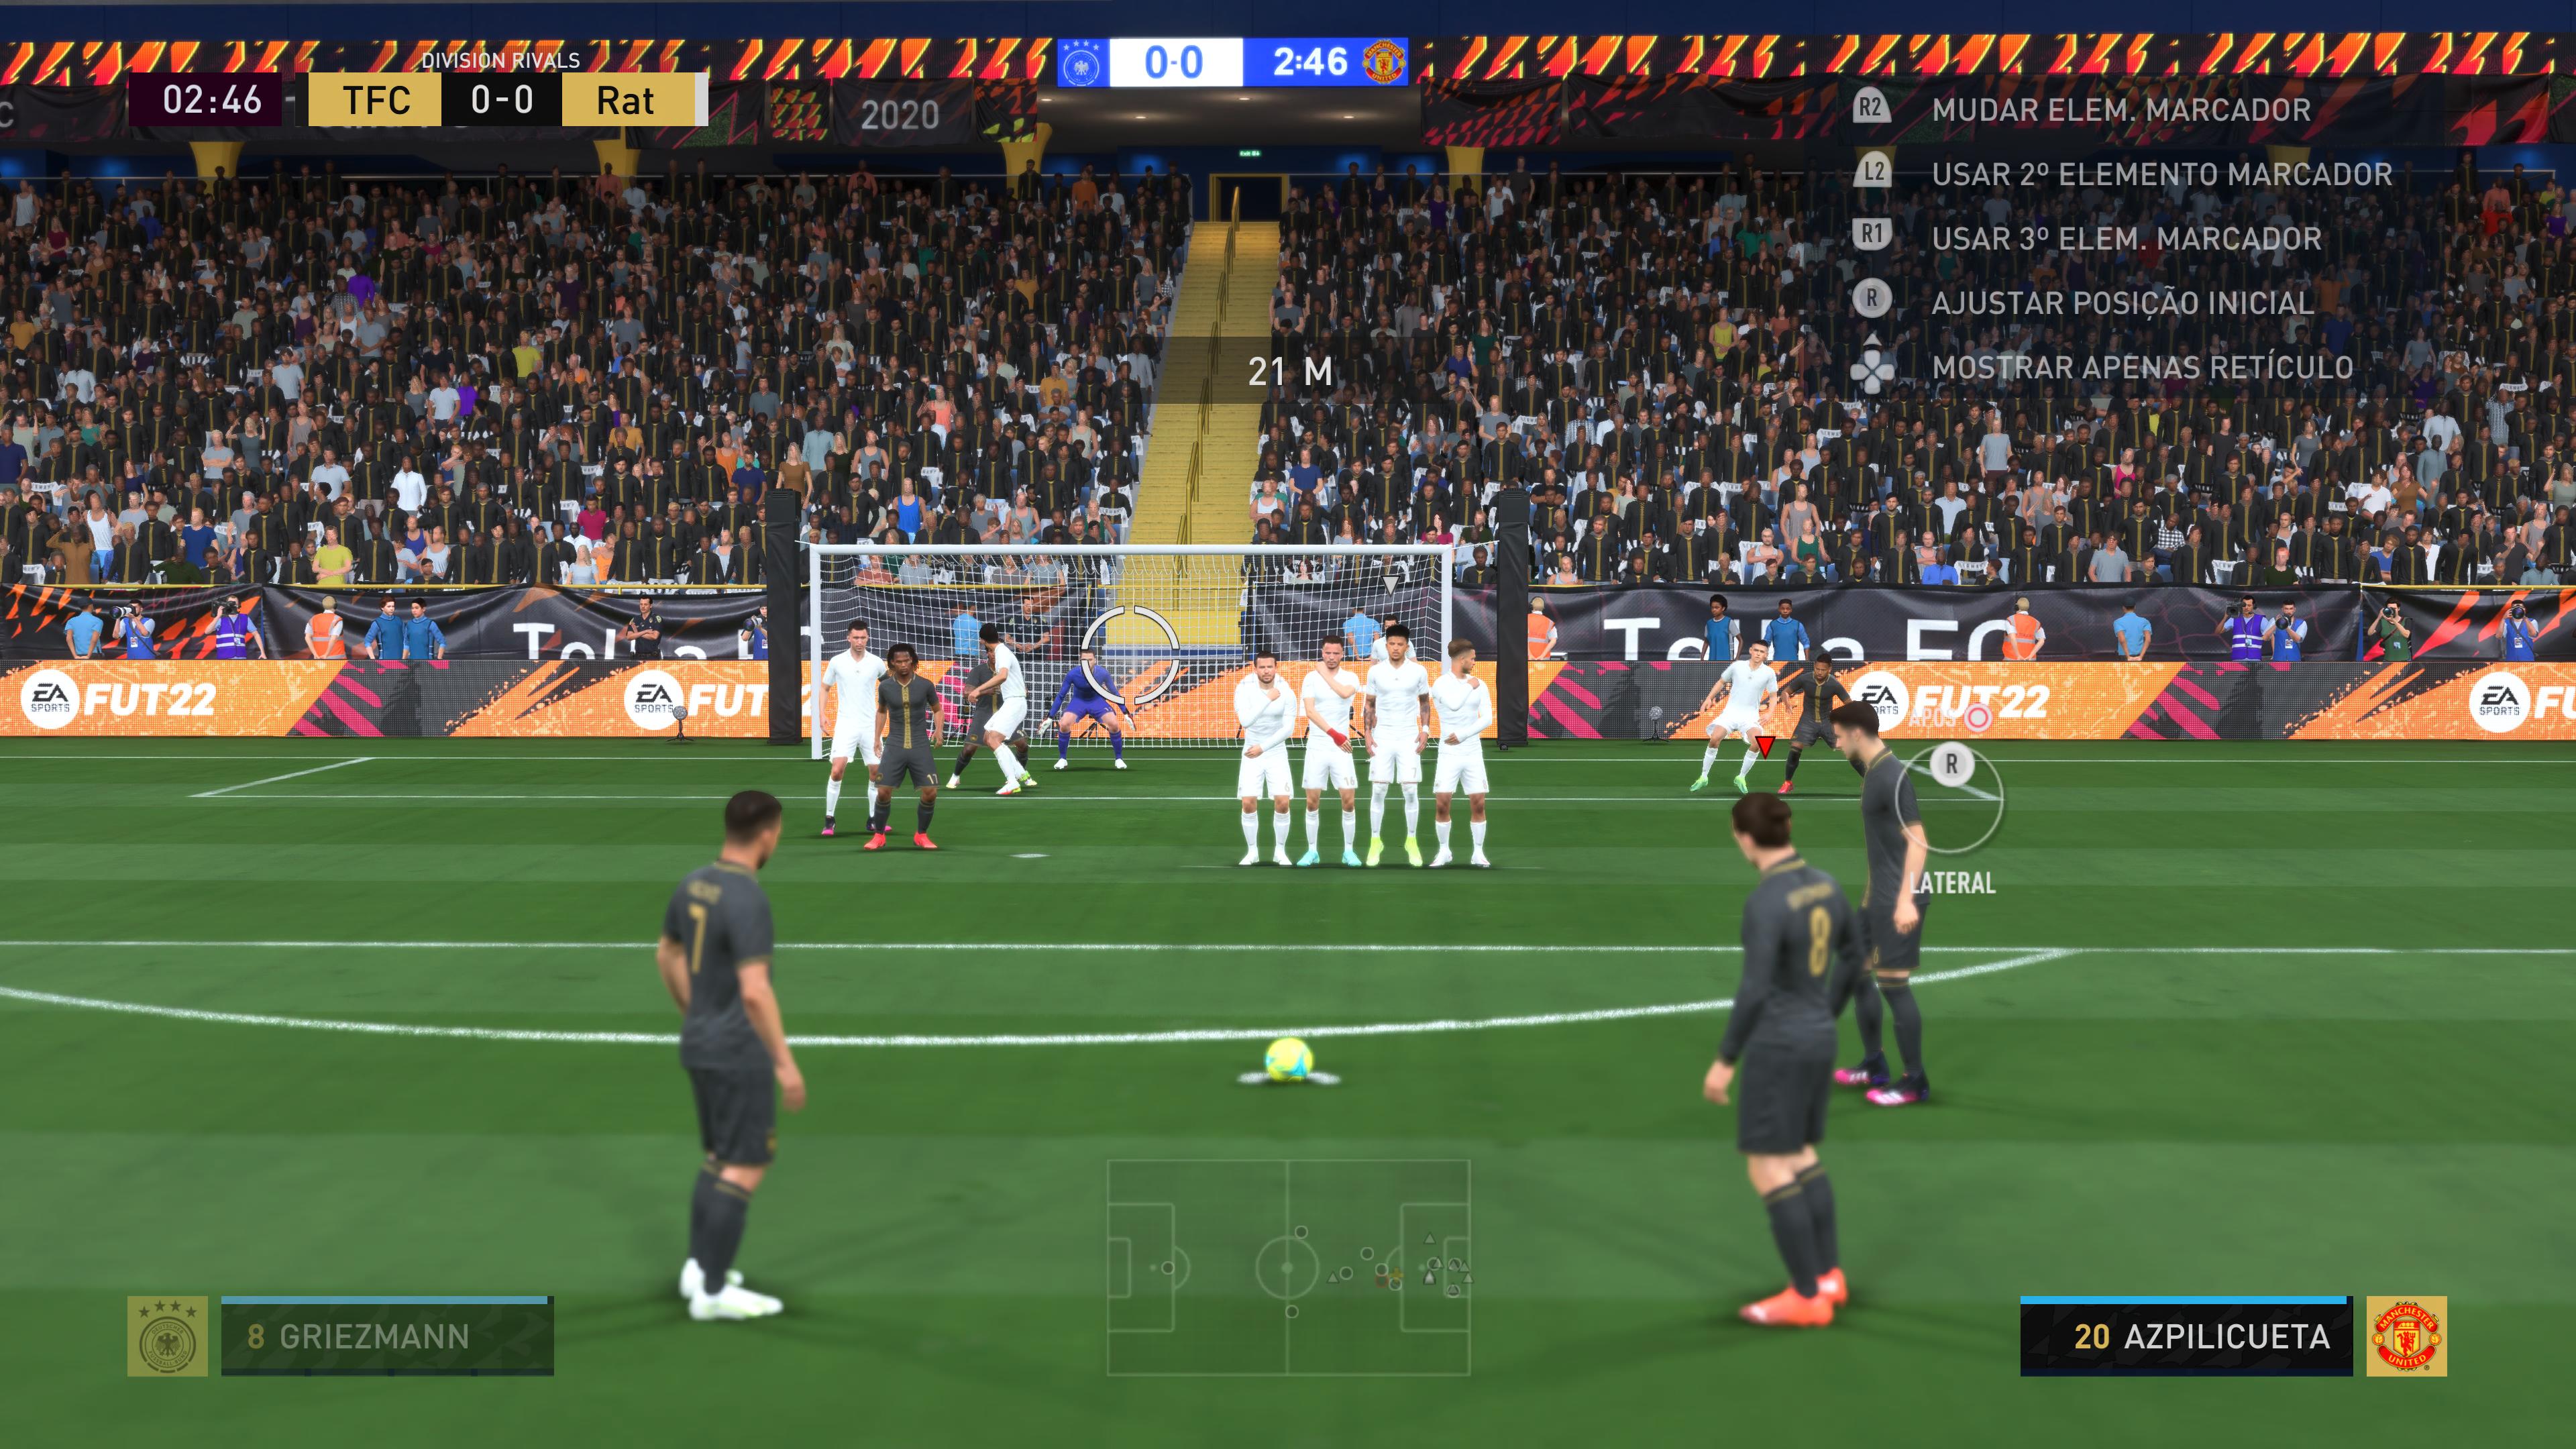 FIFA 22 Update 1.000.015